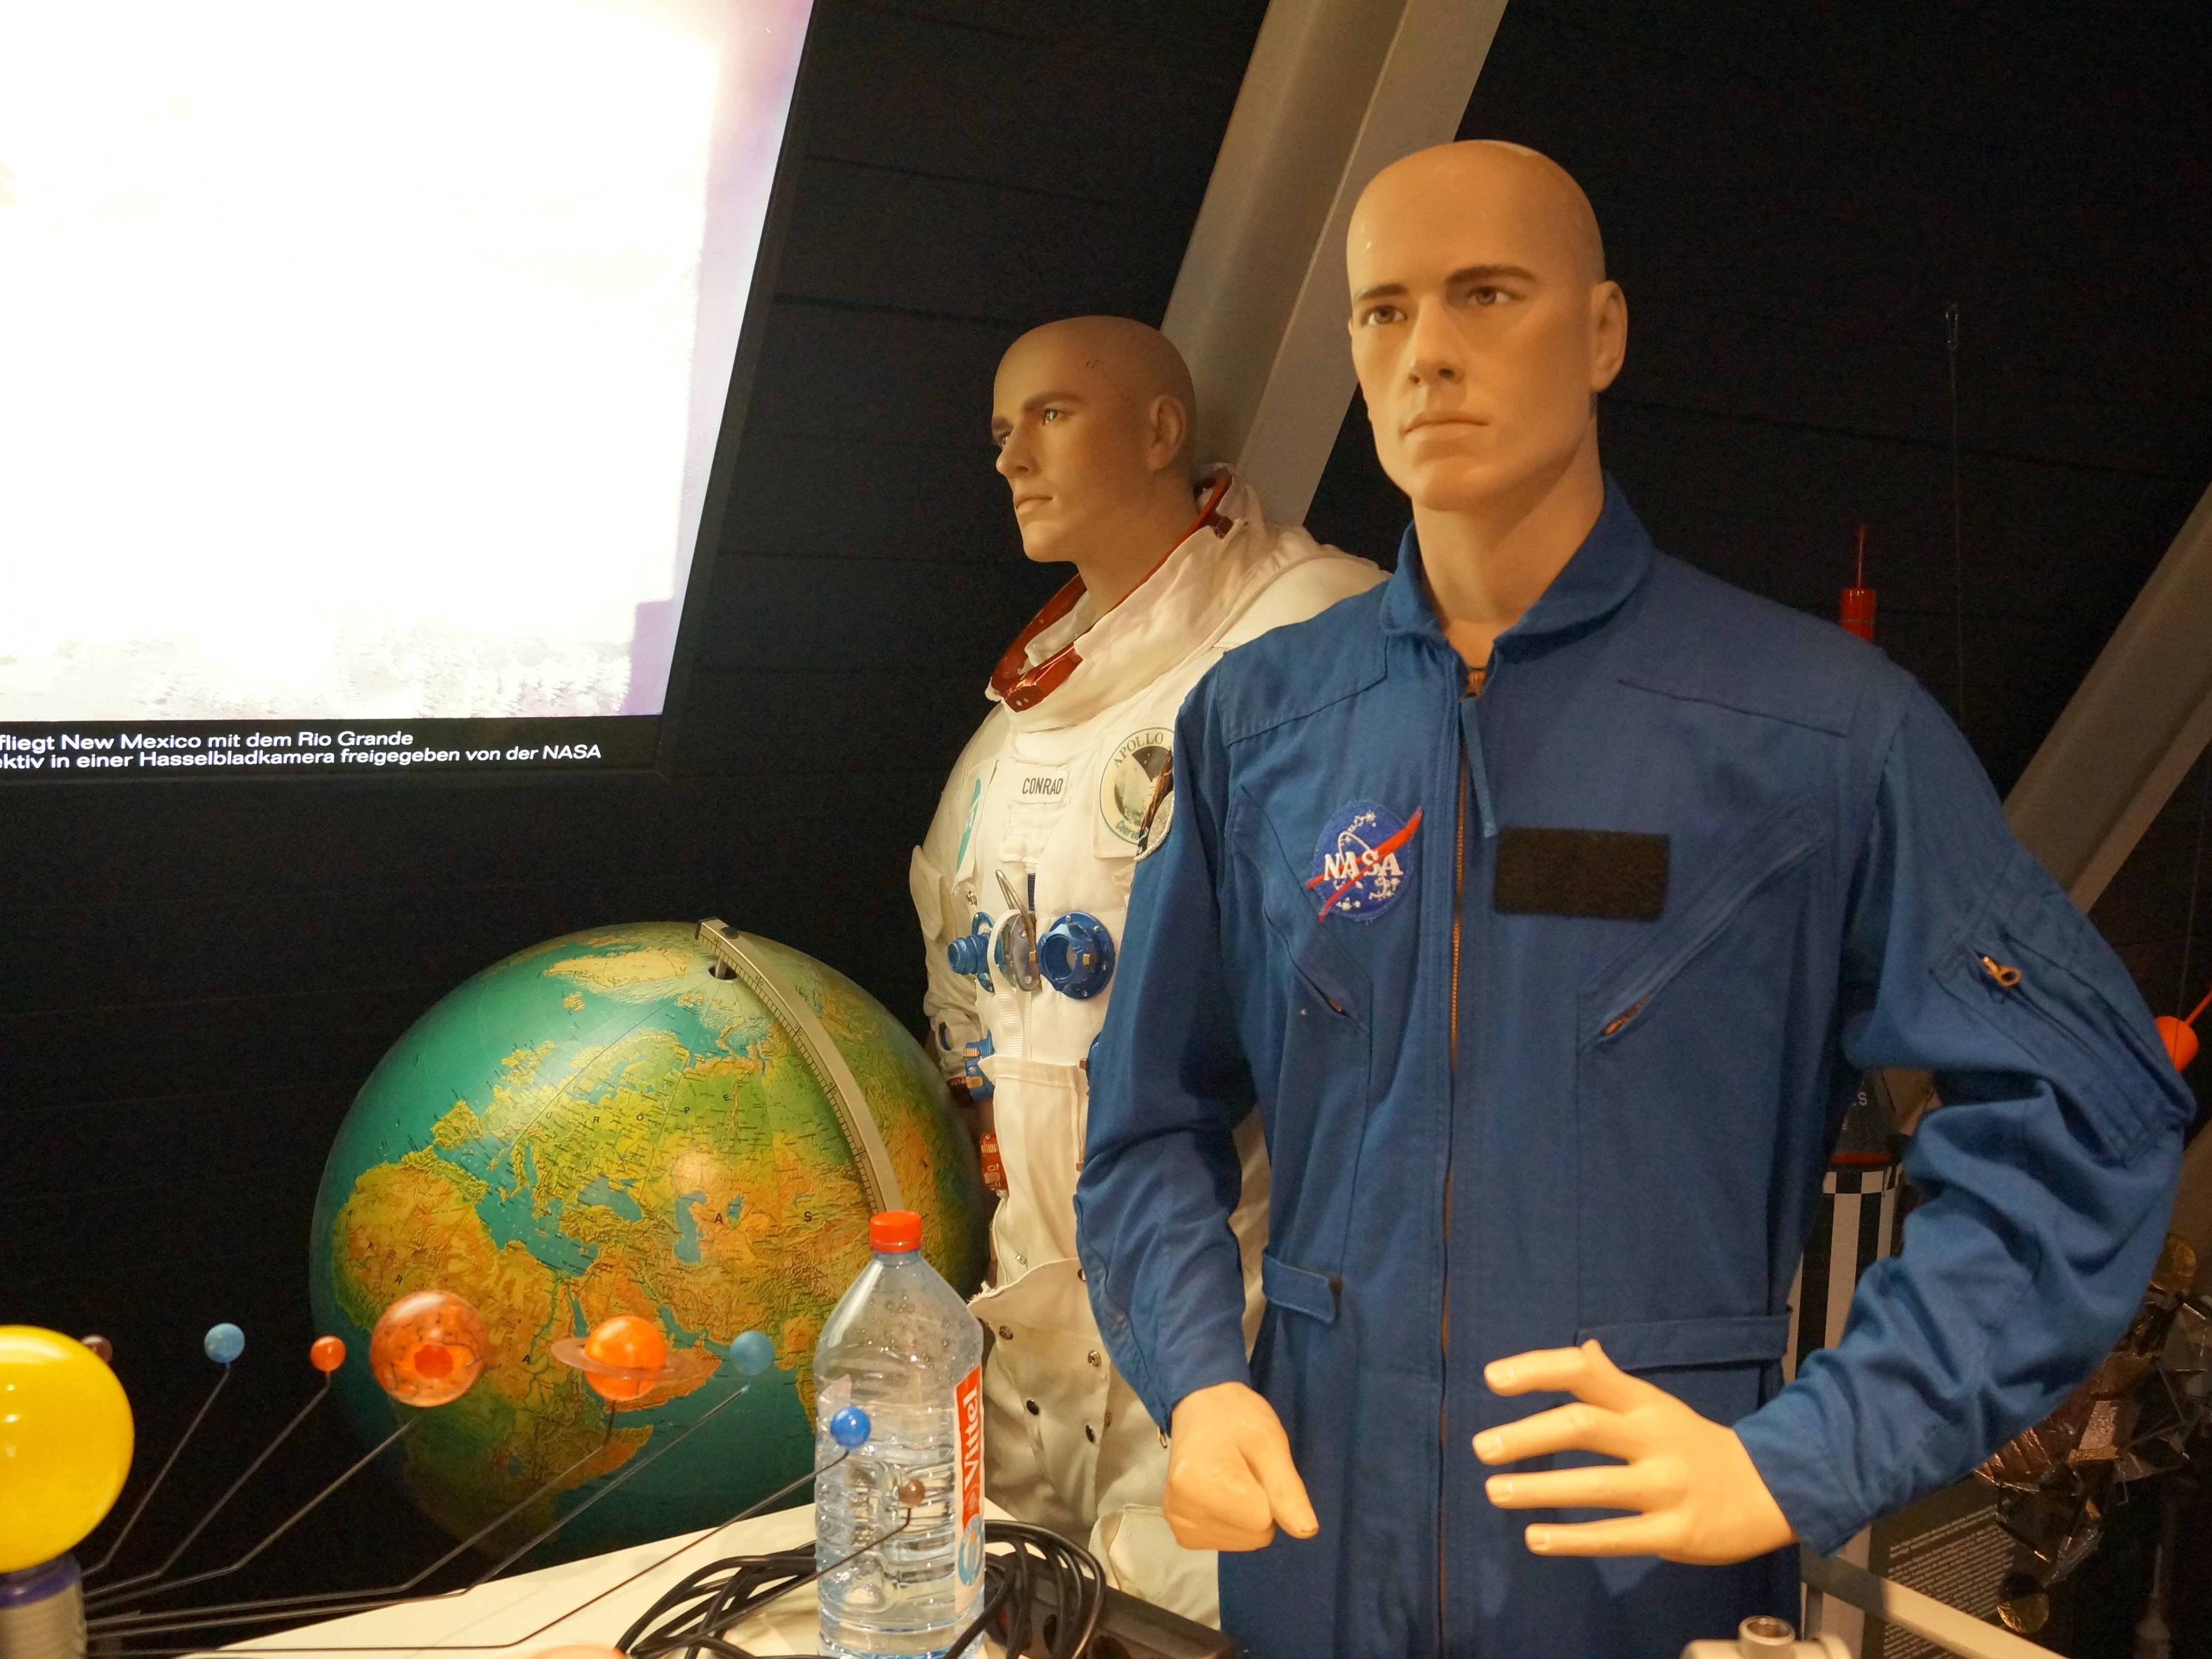 Auf dem Bild sind zwei Raumanzüger der NASA zu sehen